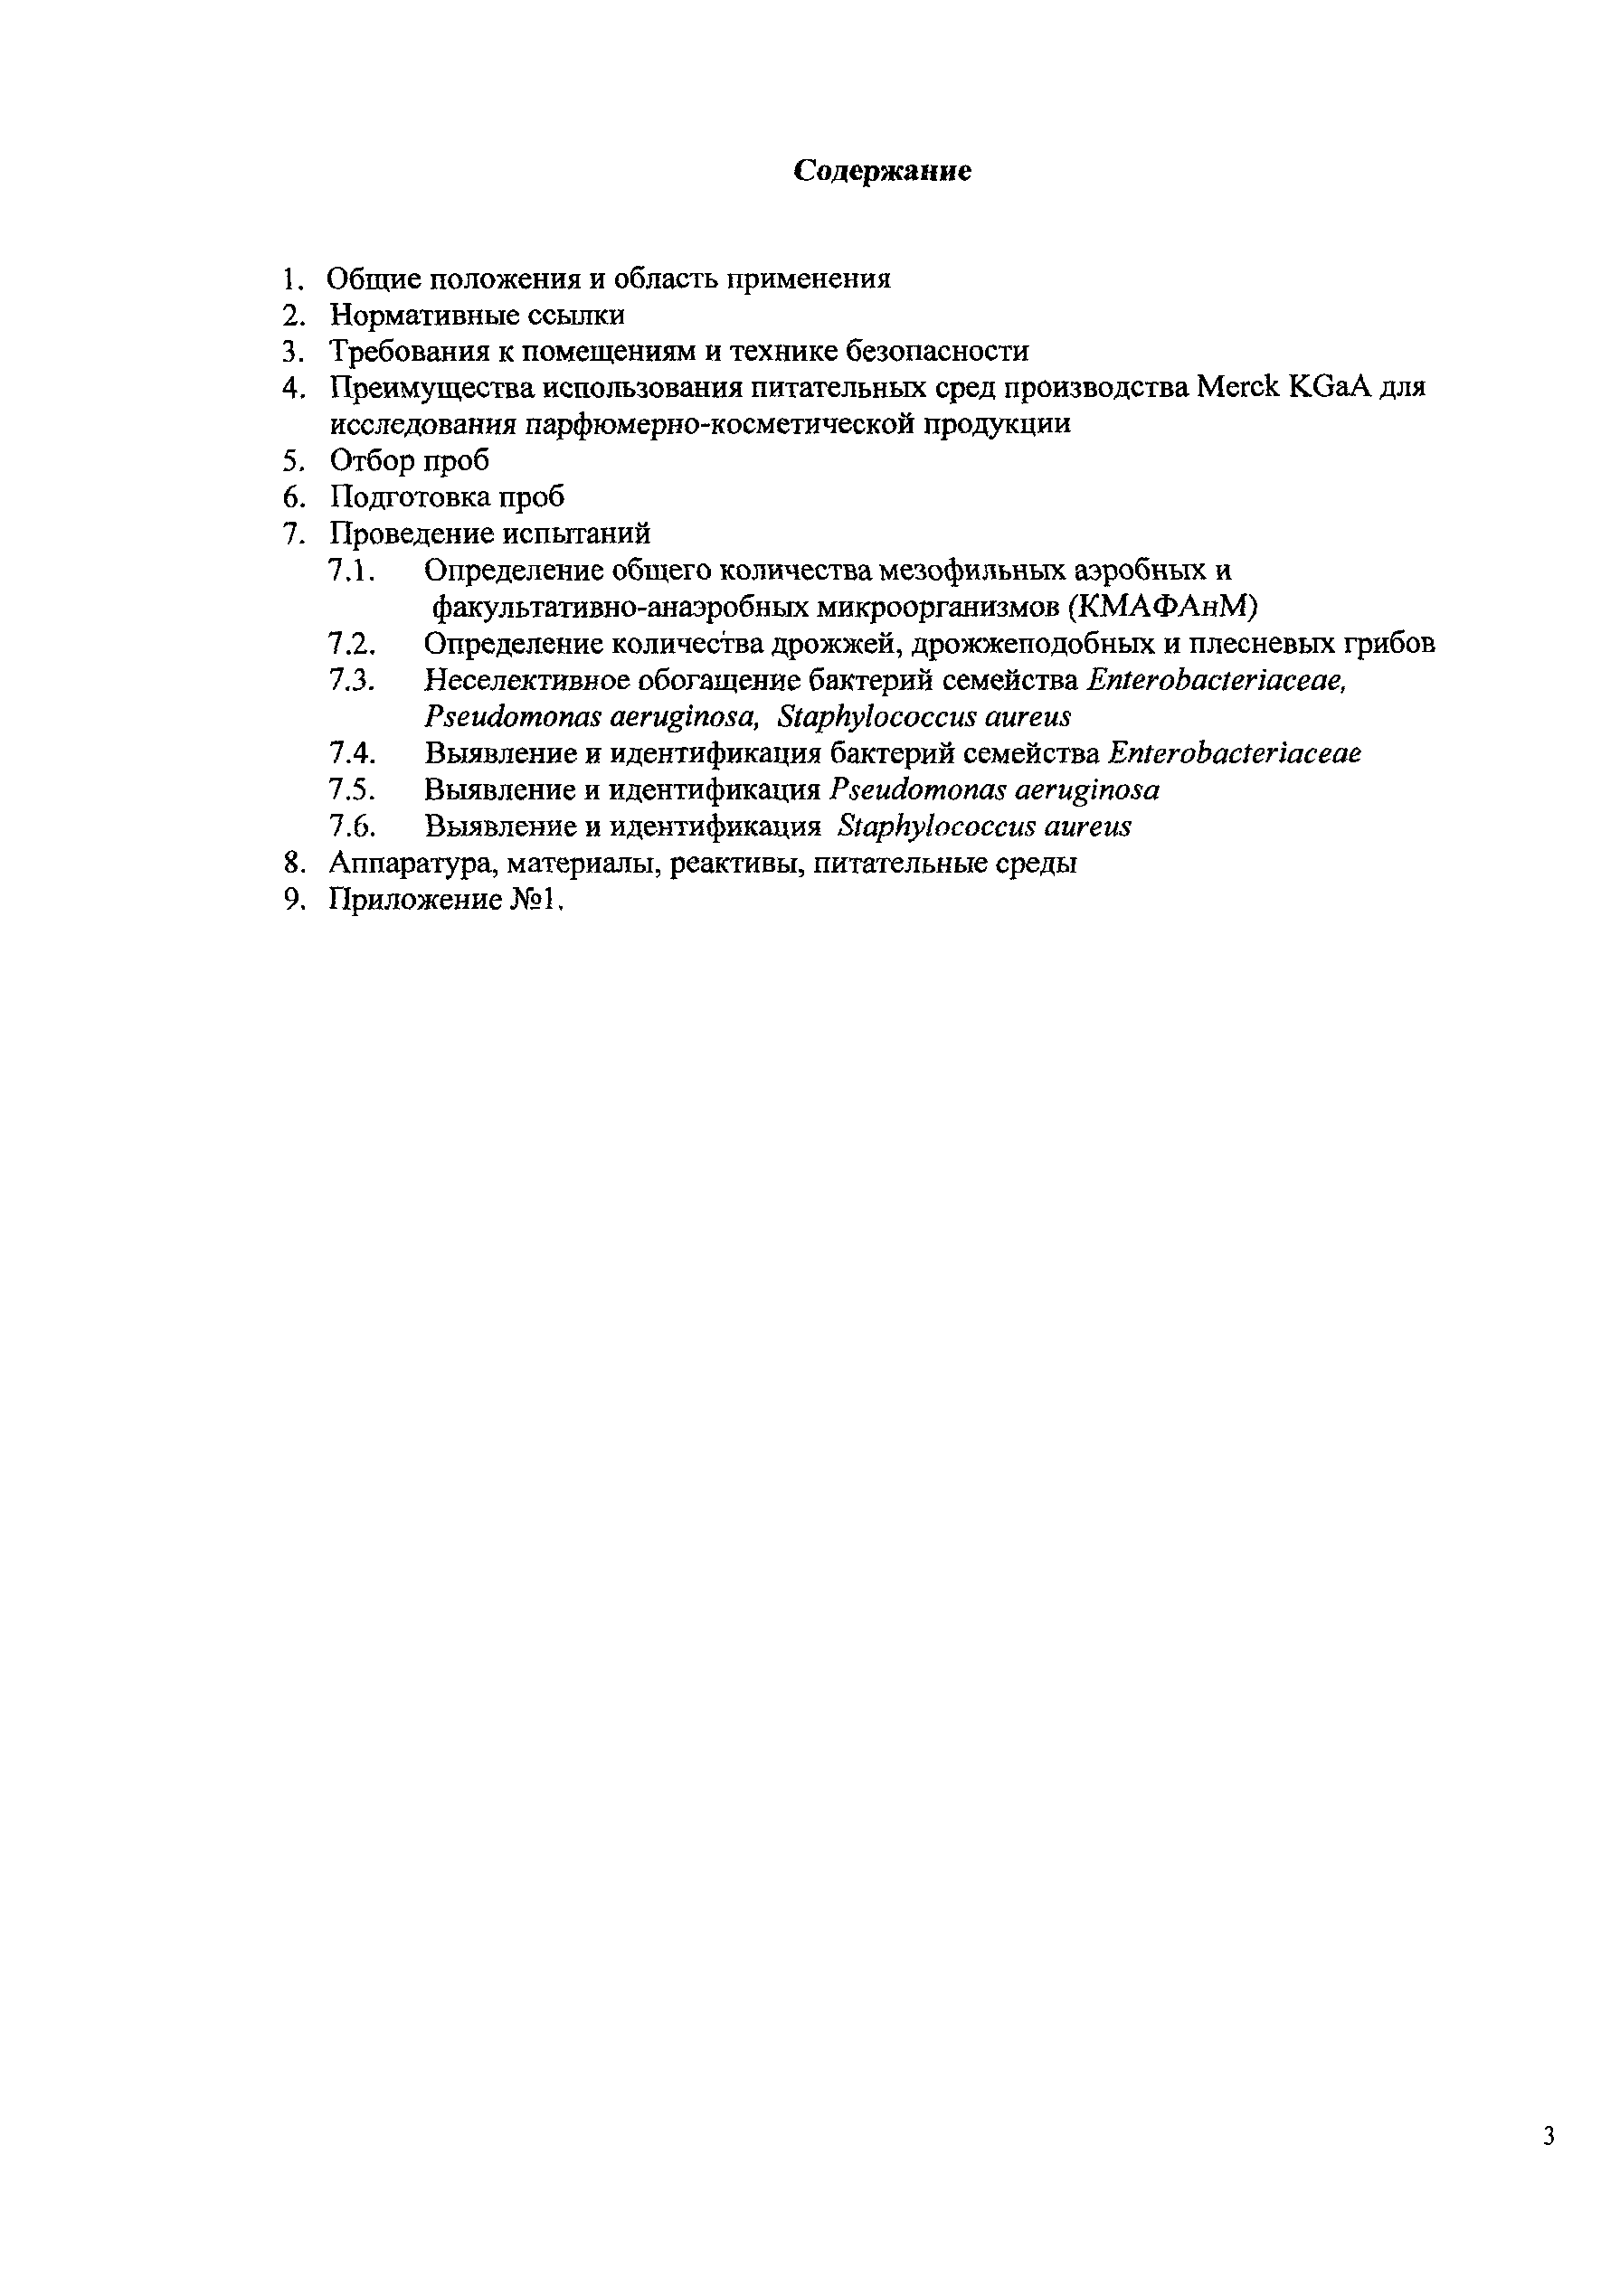 Методические рекомендации 02.010-06